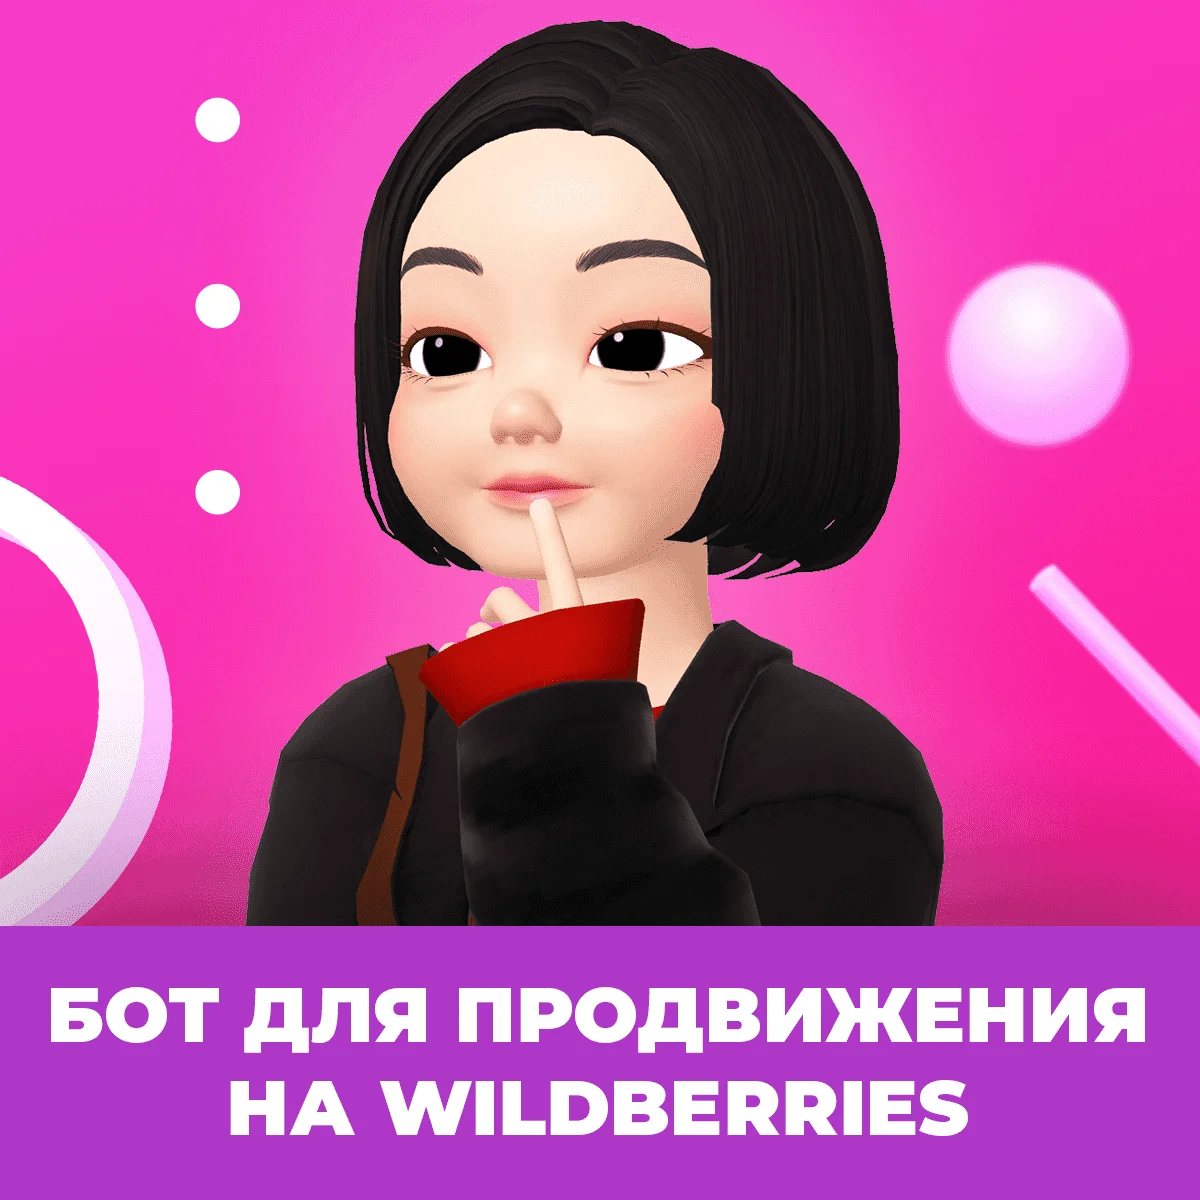 Бесплатный шаблон для оформления карточки товара WildBerries